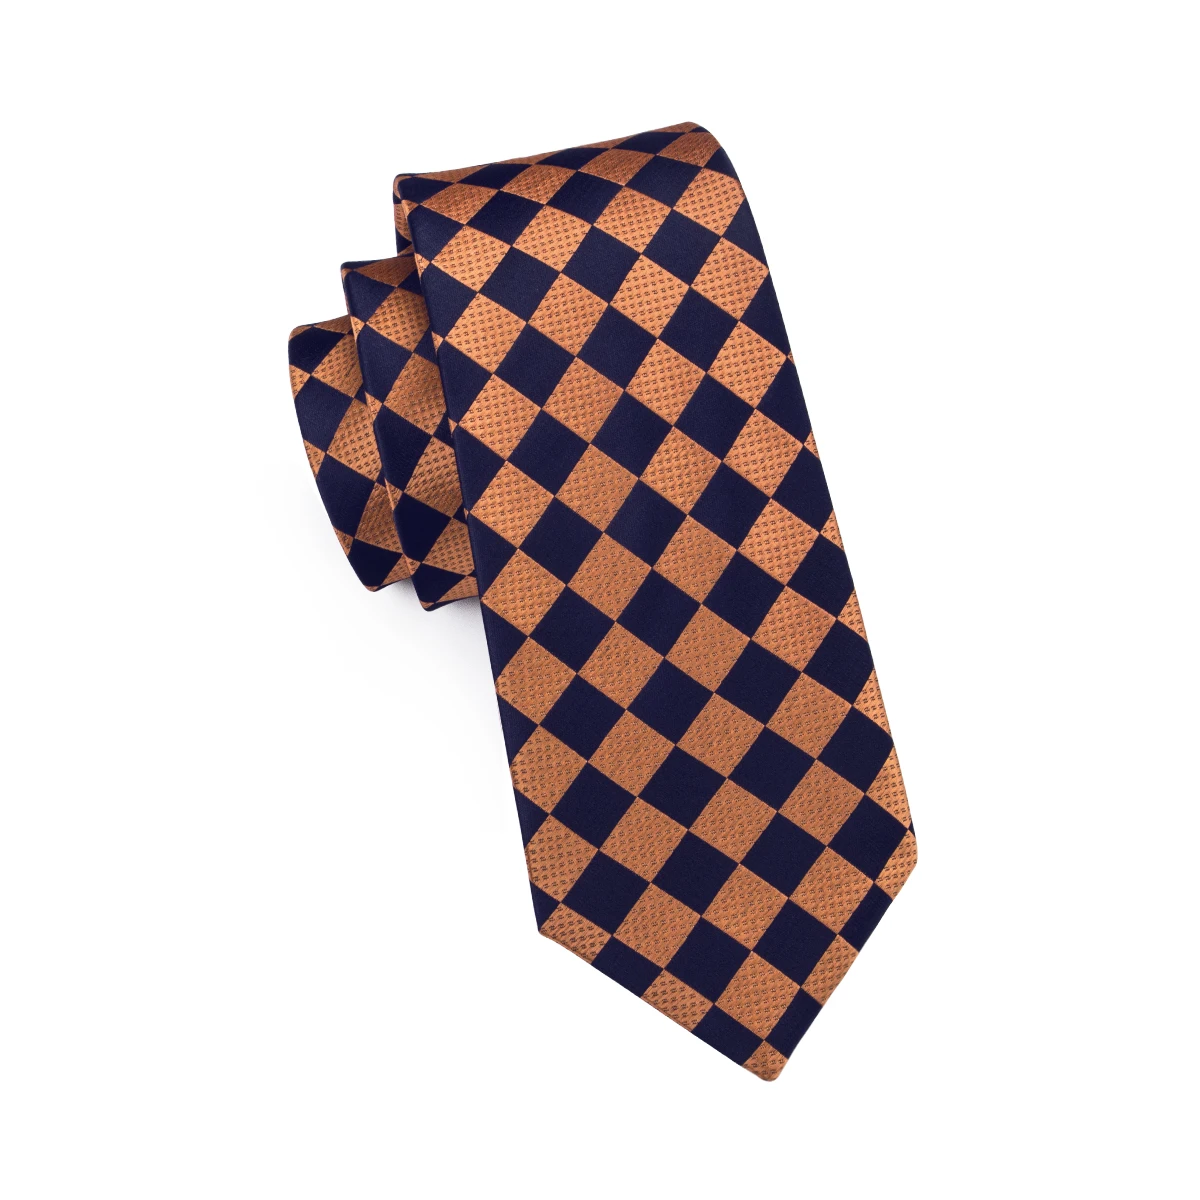 2018 Для мужчин галстук дизайнеры модные золотые плед связей для Для мужчин высокое качество шелковый галстук комплект платок запонки набор